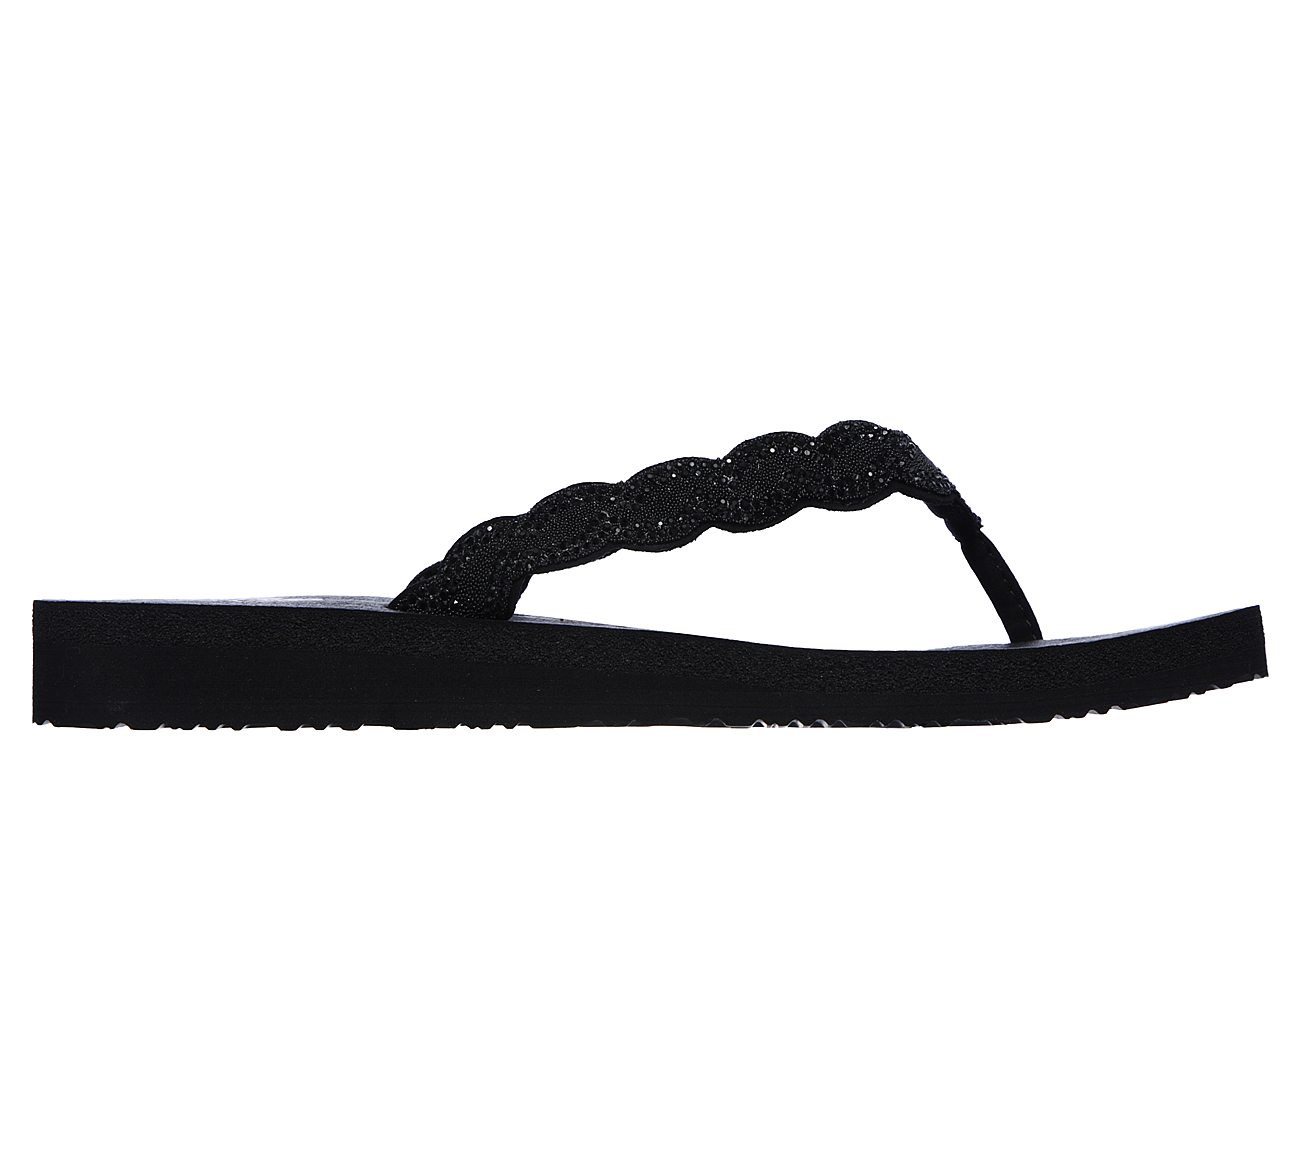 skechers meditation sandals black